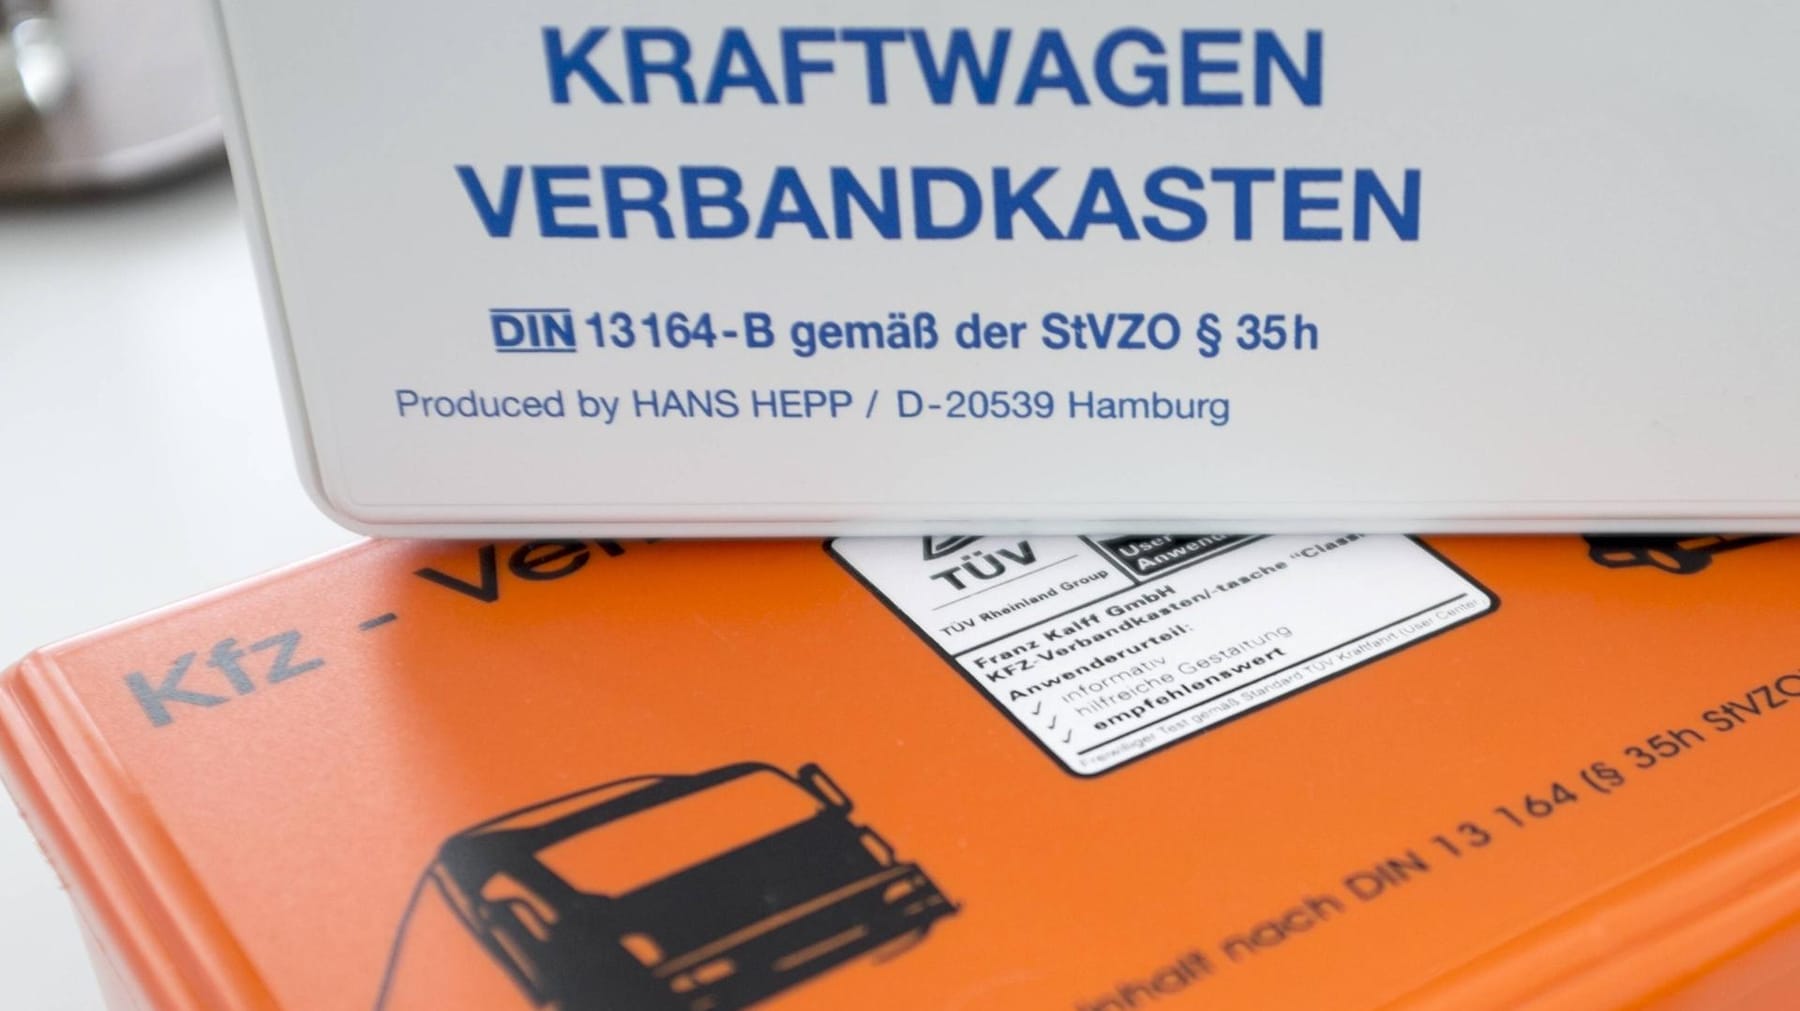 TÜV Rheinland: Verbandkästen in Unternehmen nach neuer Norm ergänzen